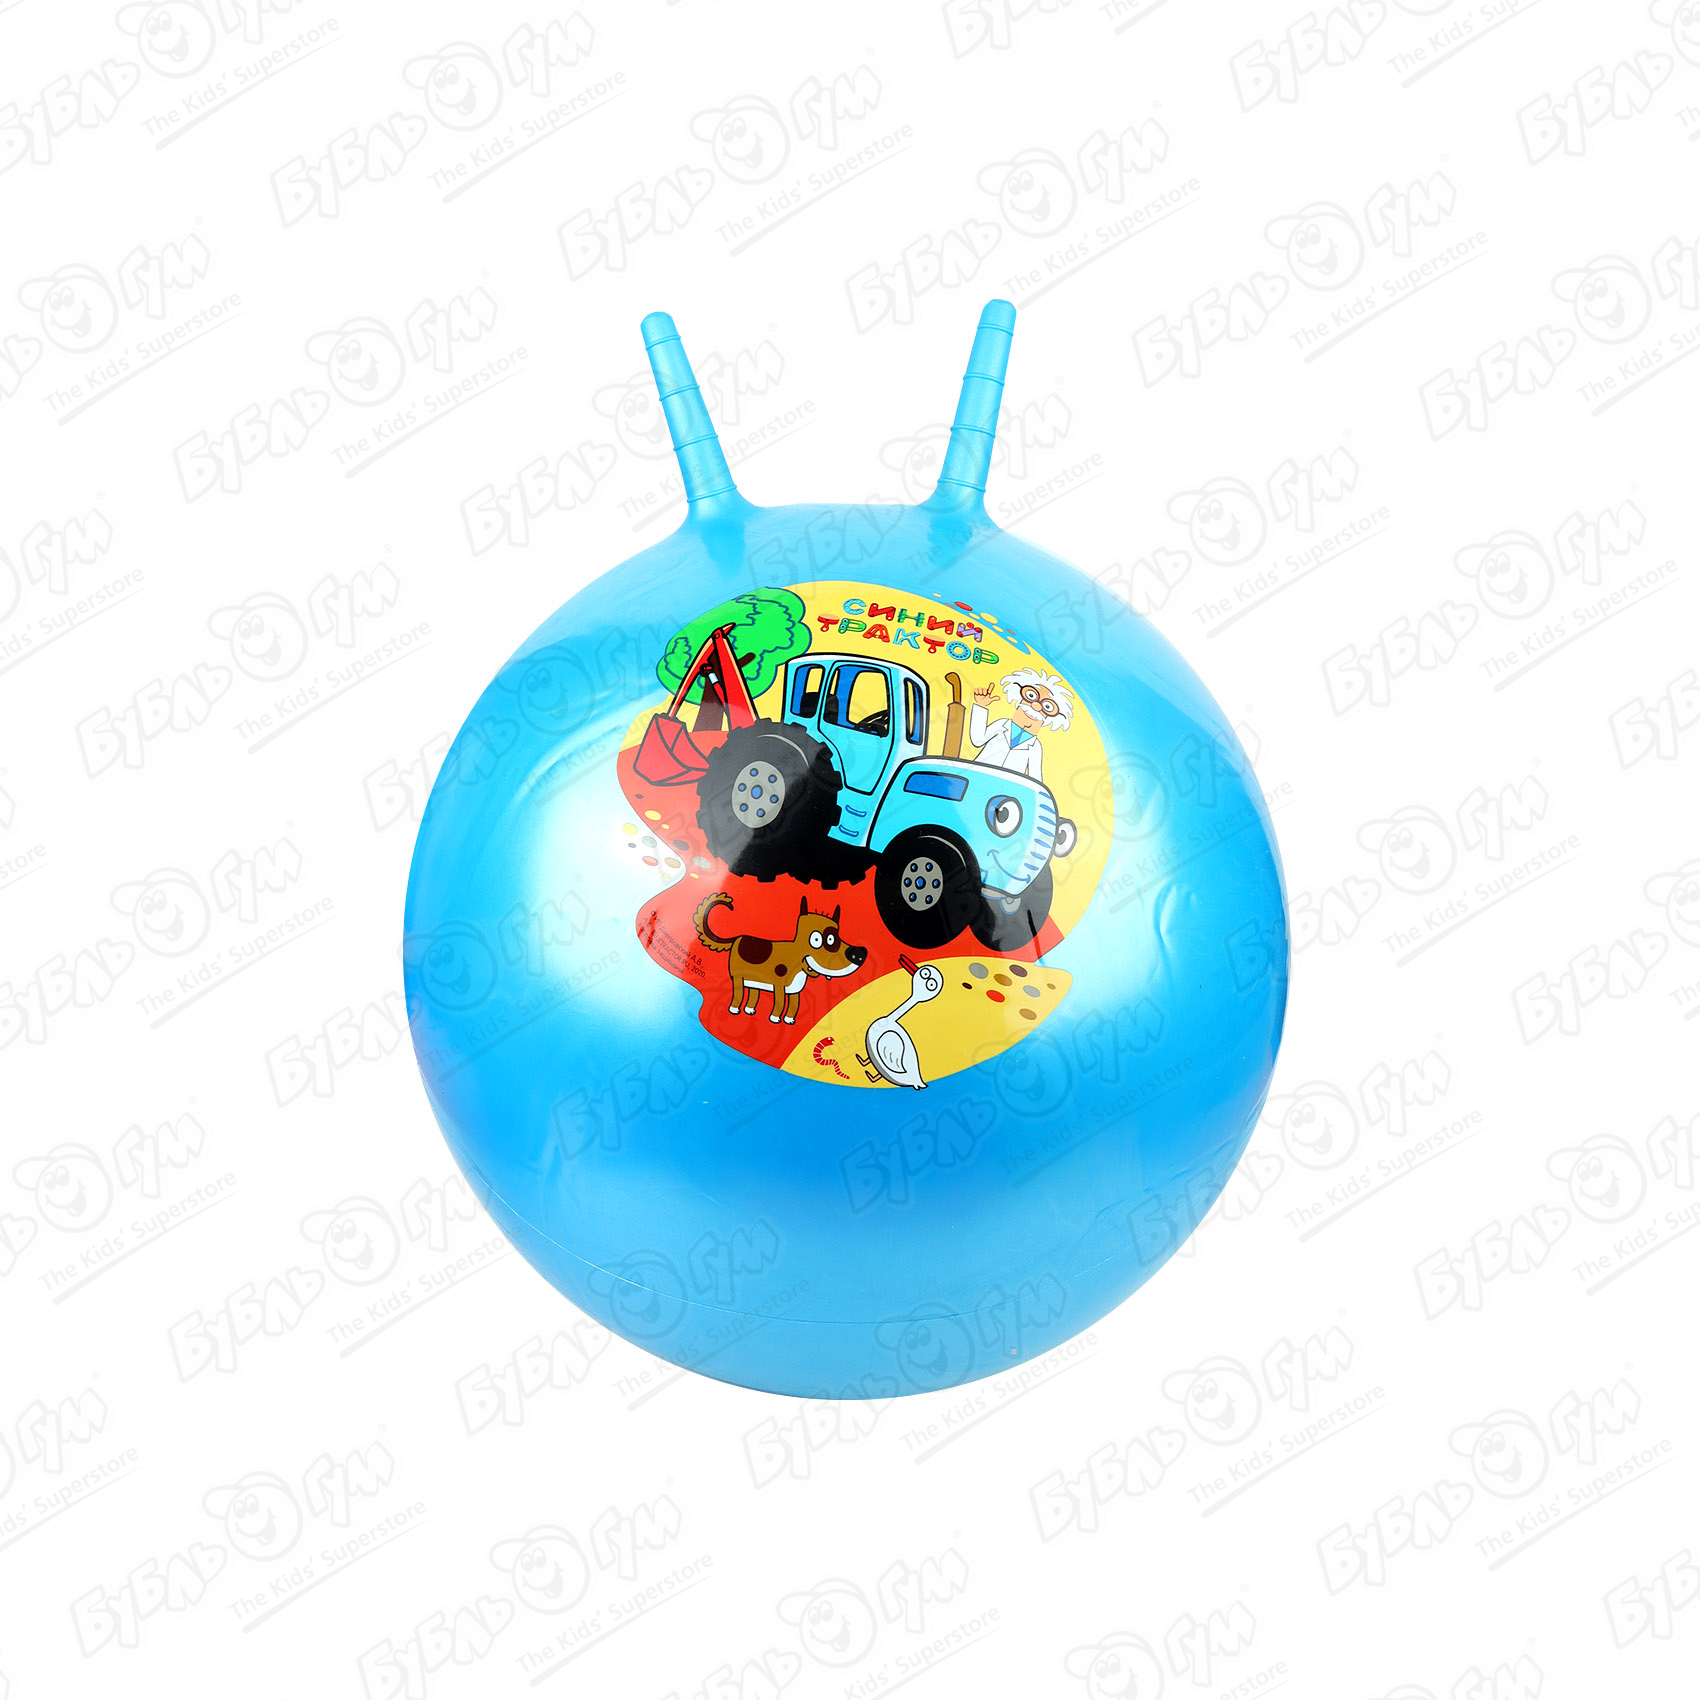 Мяч прыгун с рожками Синий трактор 55см в ассортименте мячи прыгуны skyballs вспышка 45мм 5 шт